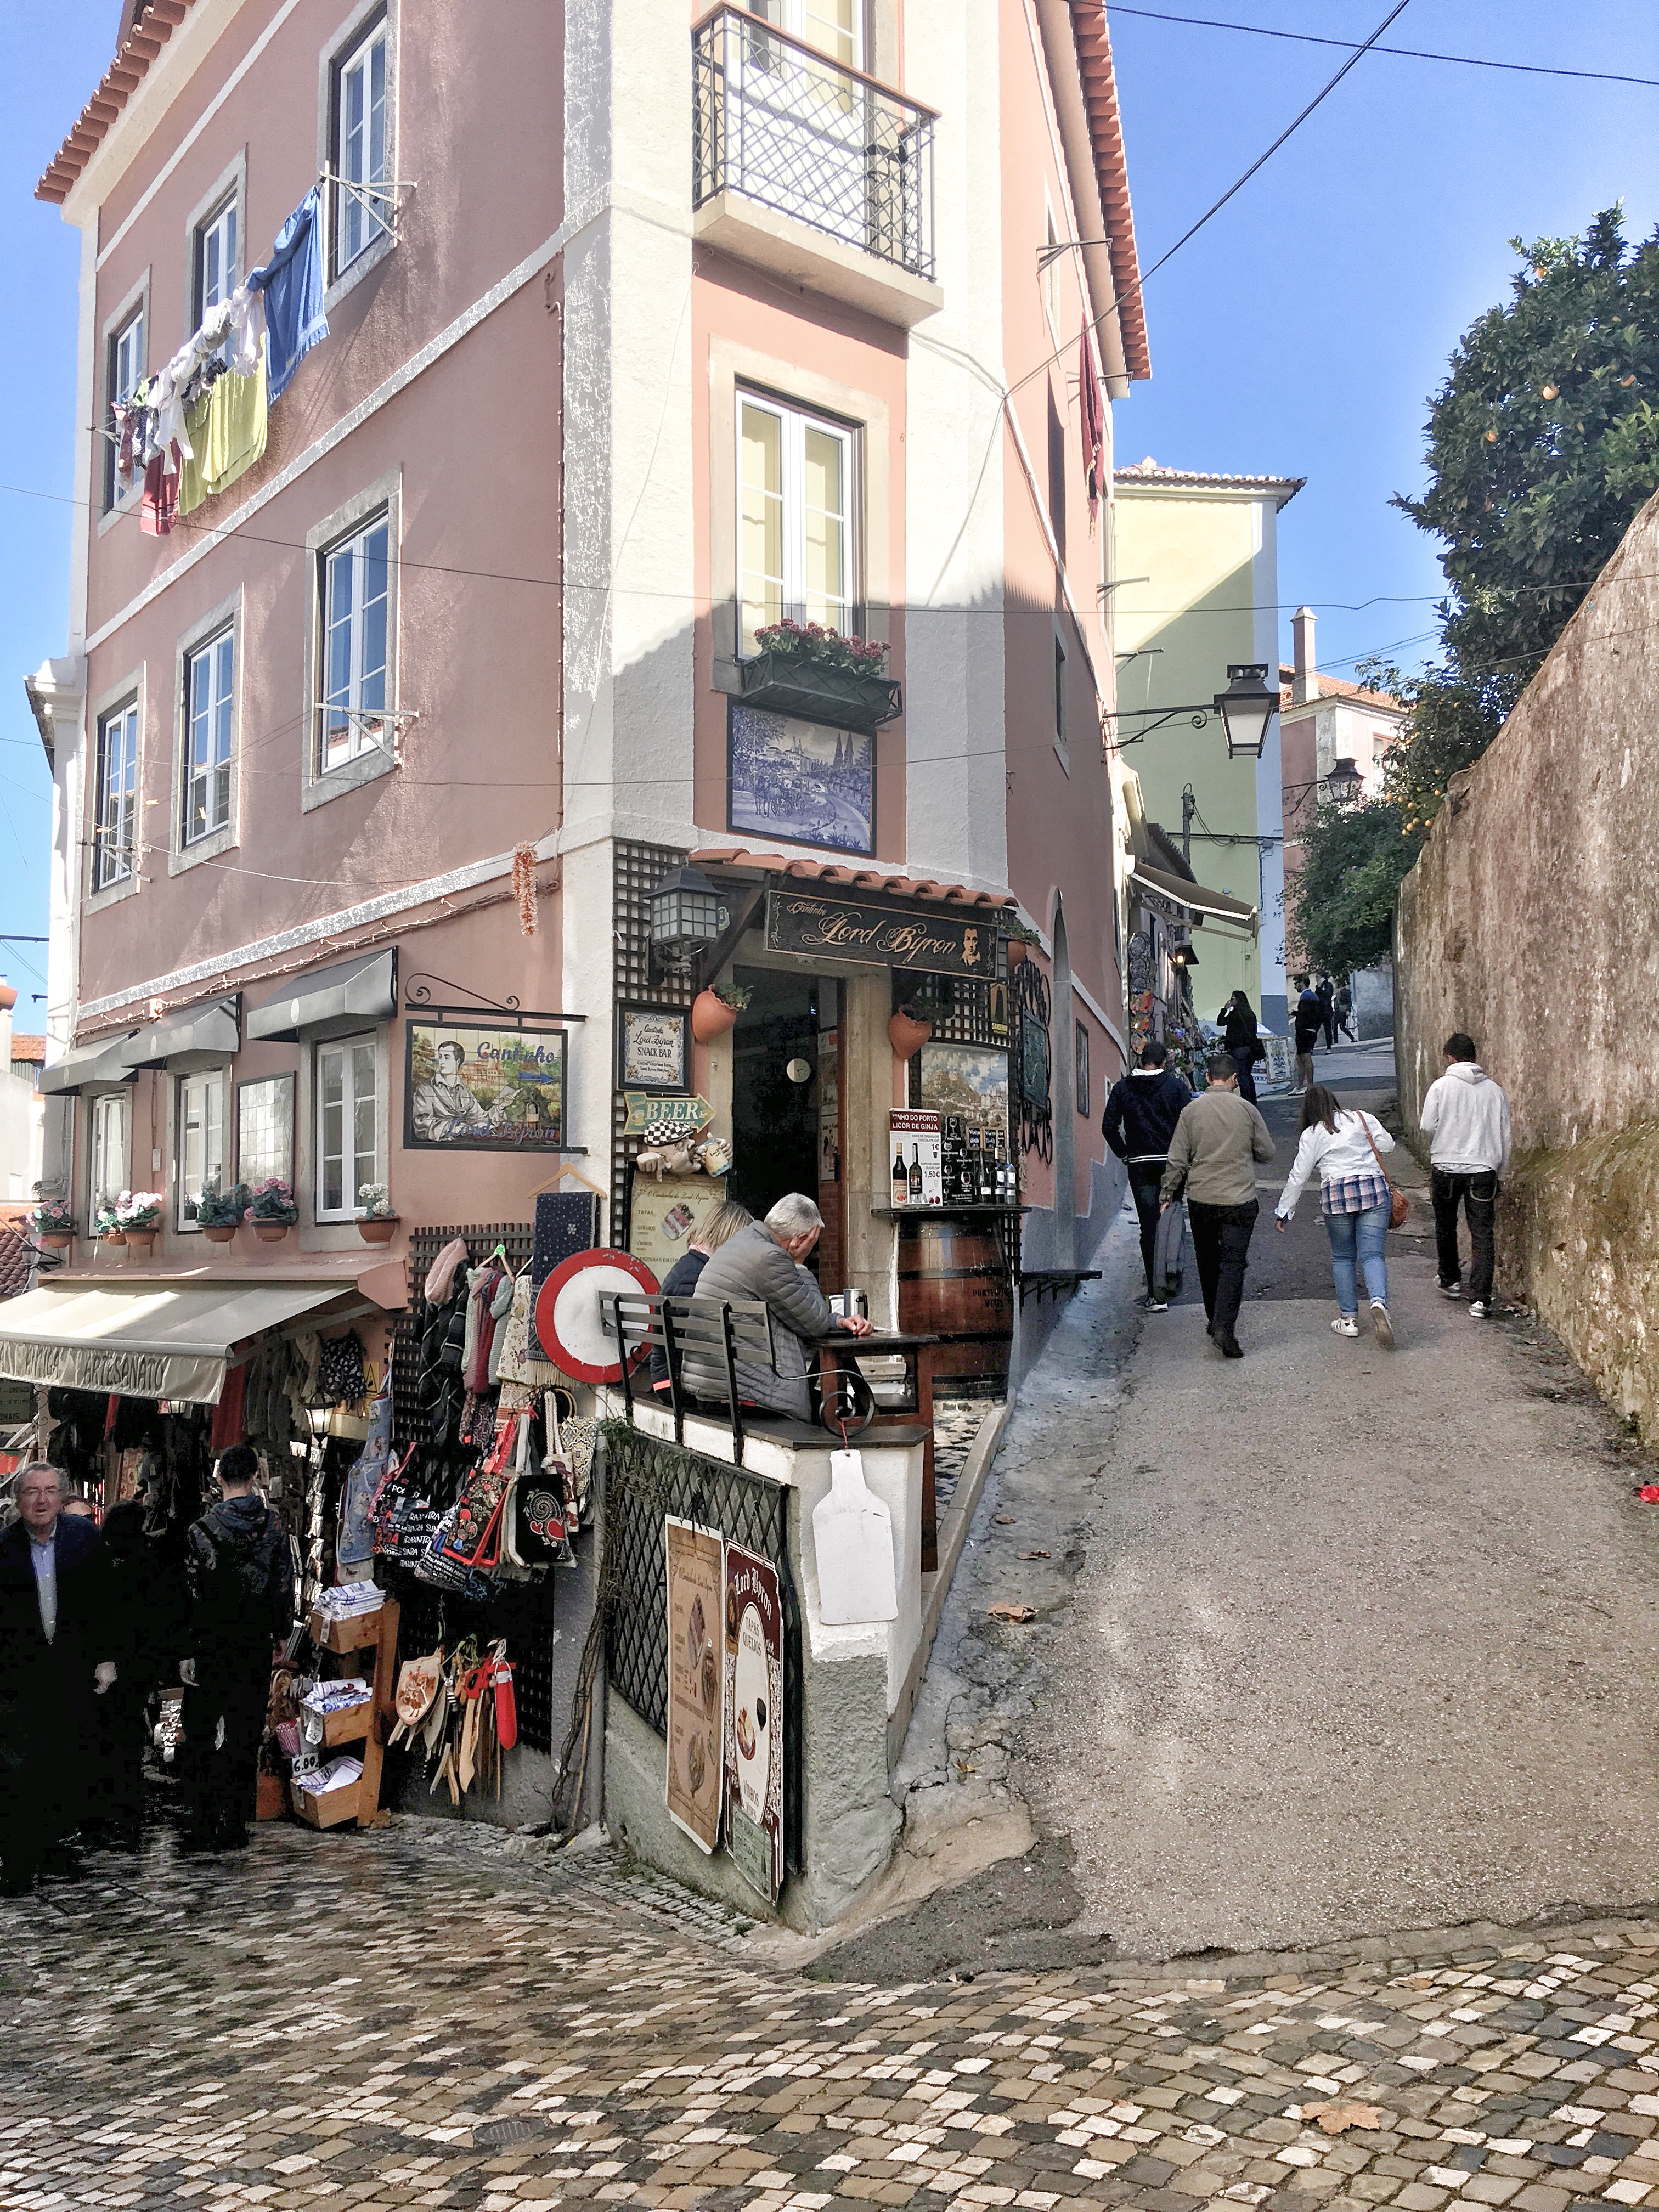 Cute alleyways in Sintra